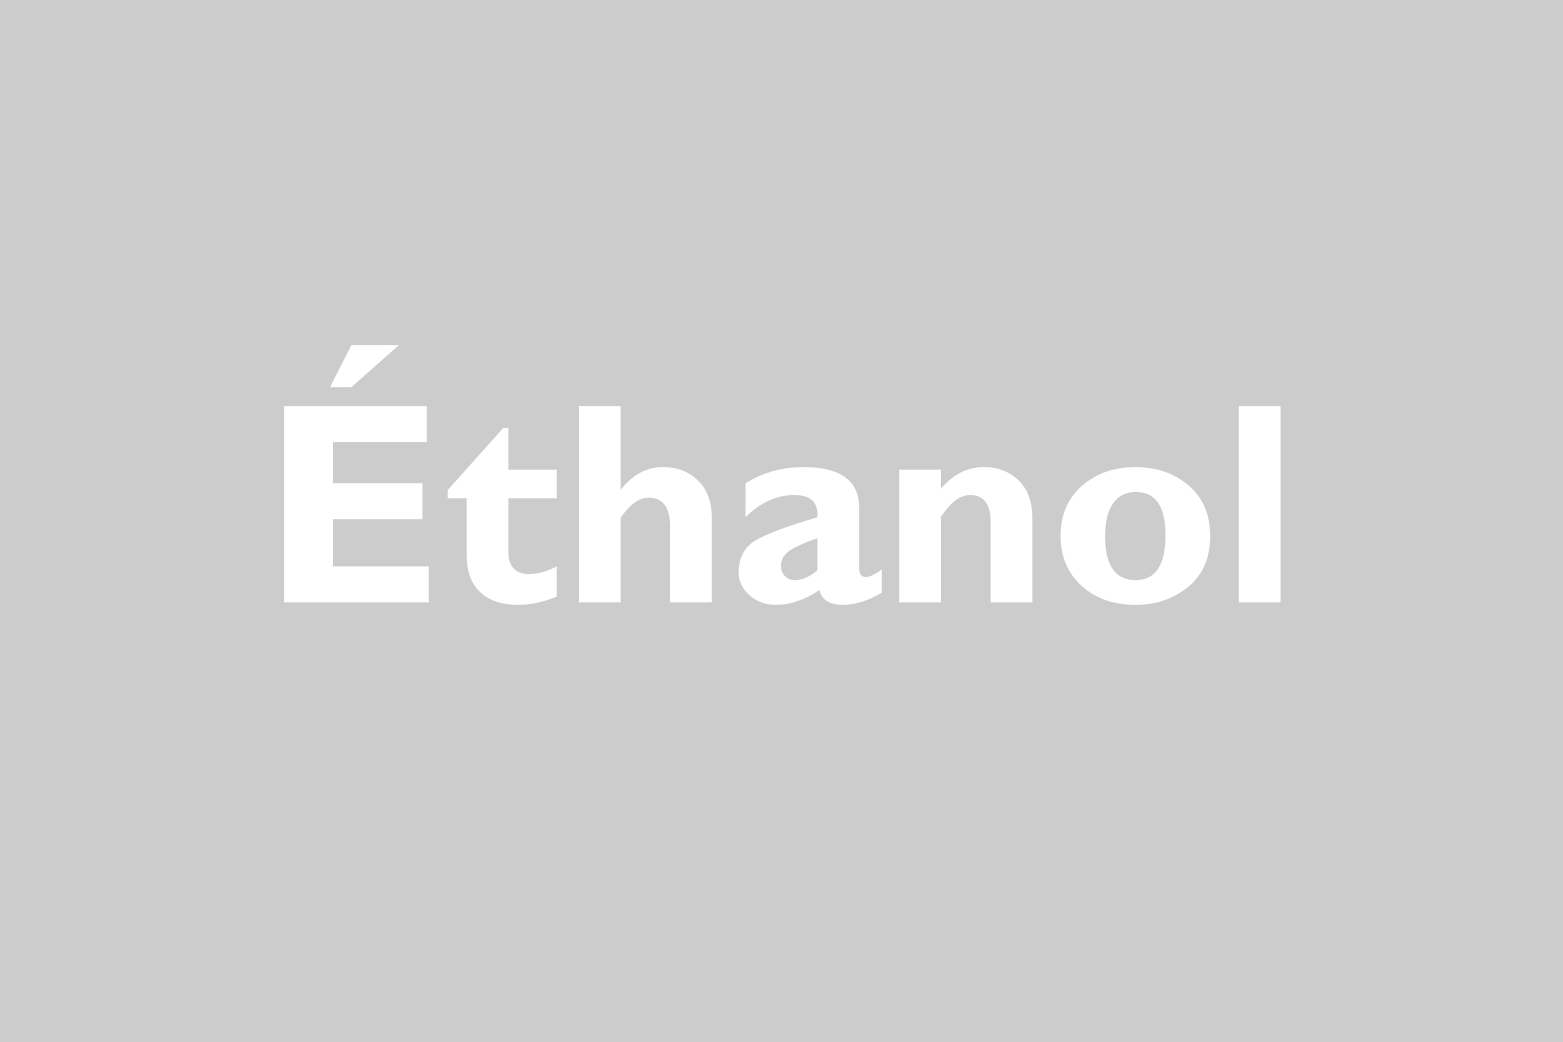 1ere usine d’éthanol à échelle commerciale